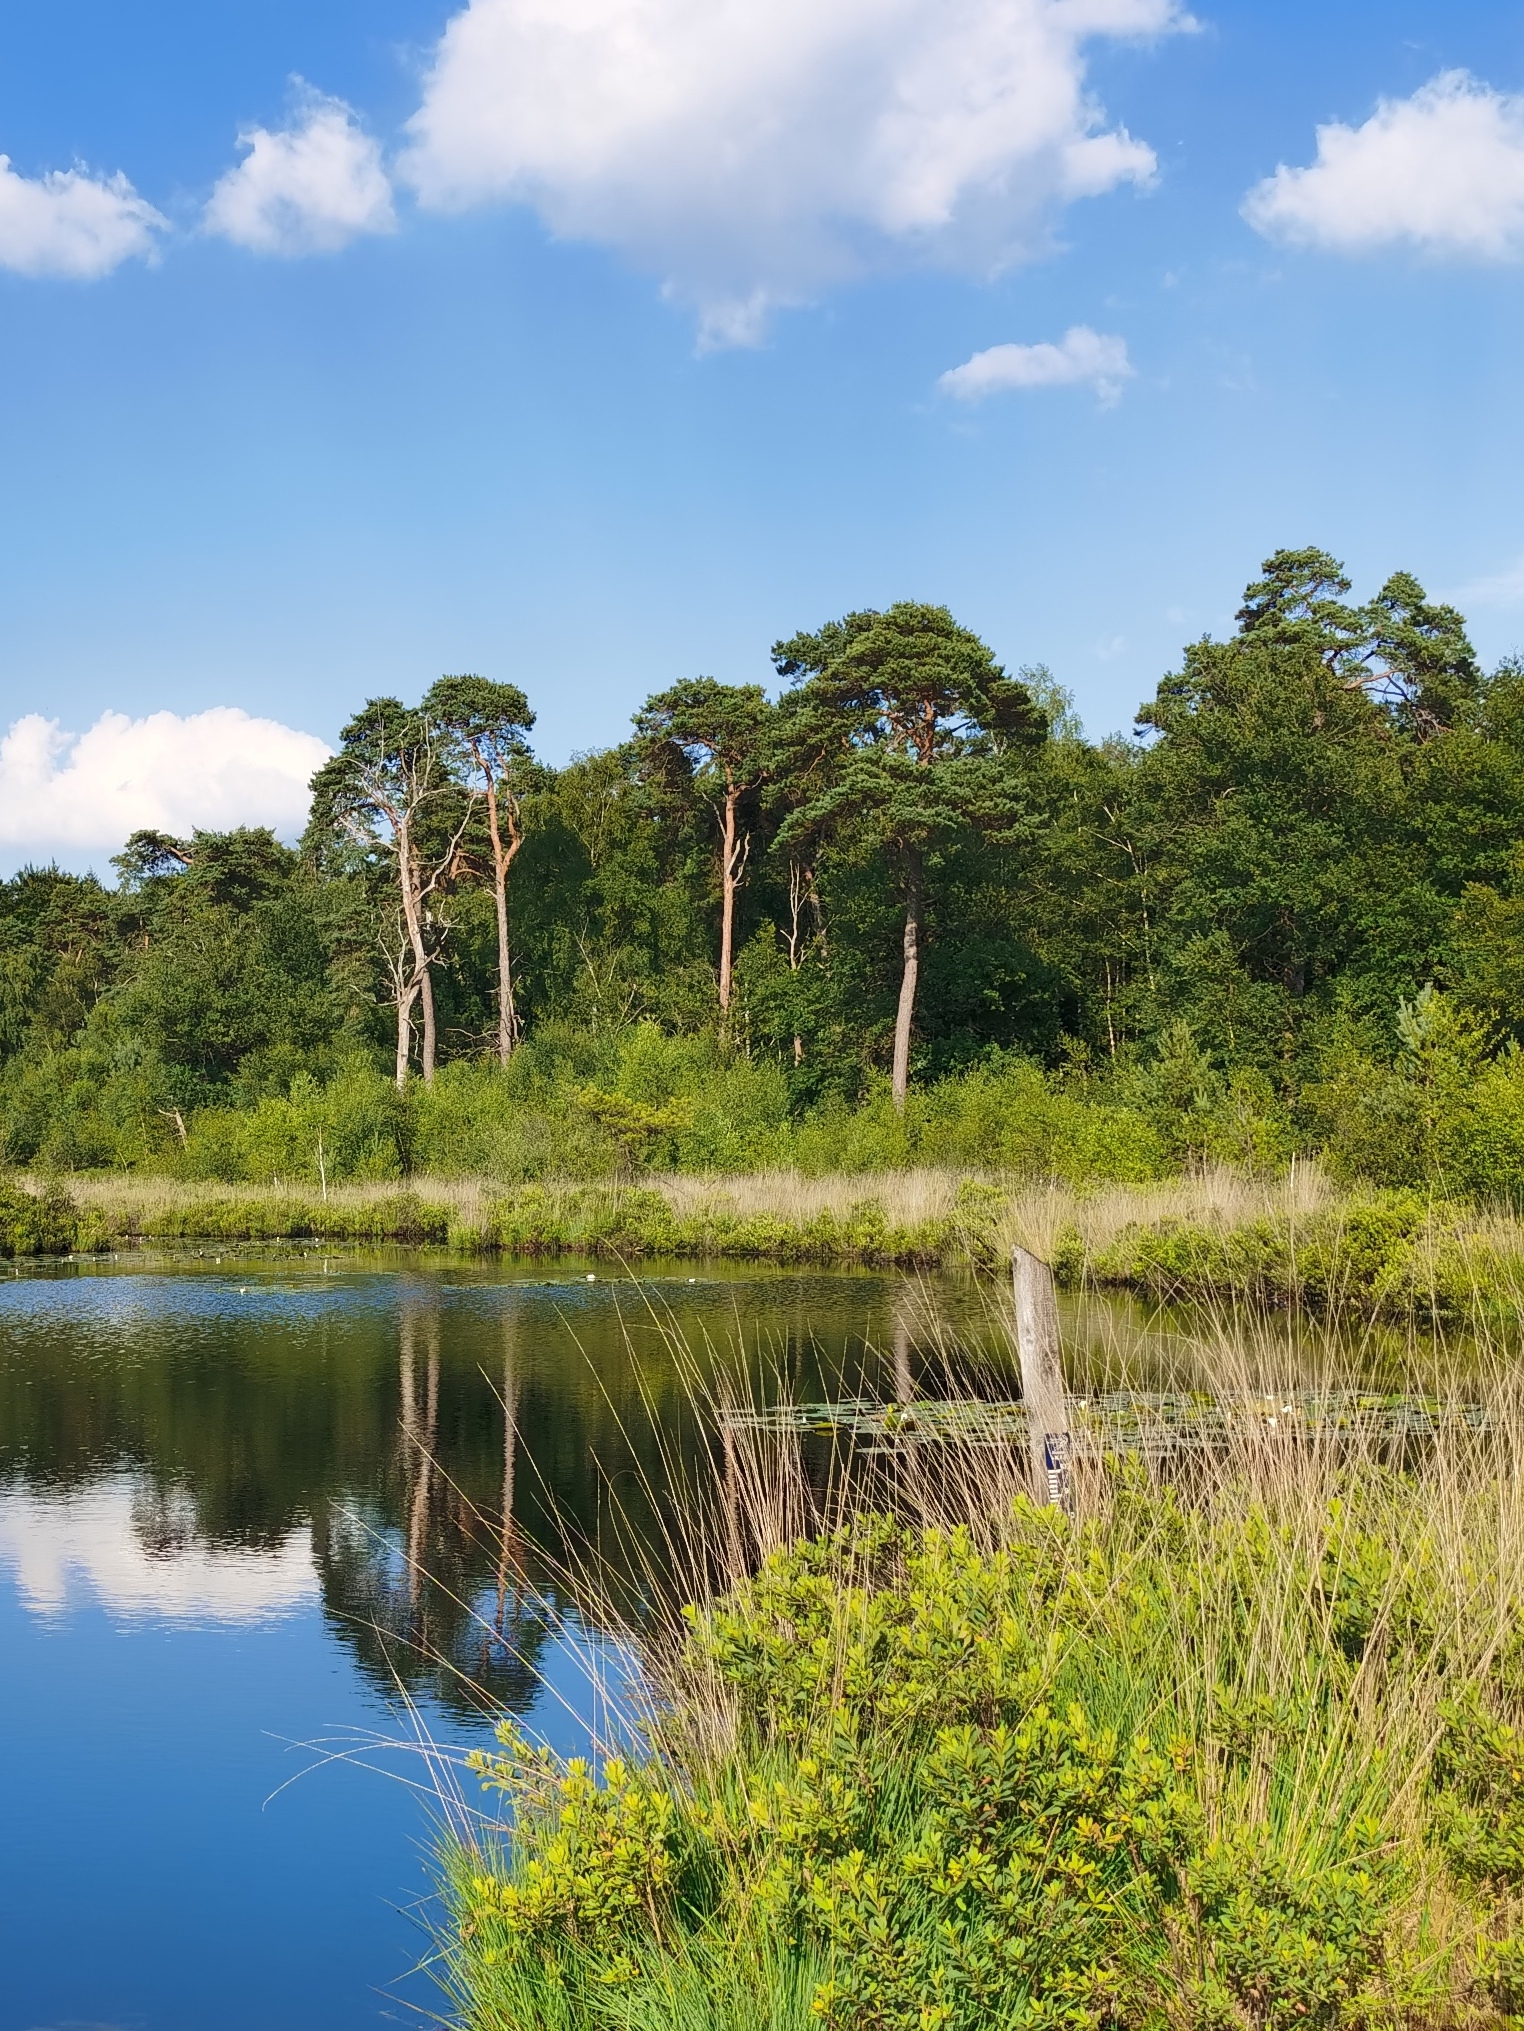 题荷兰Oiterwijk(奥斯特韦克)自然公园莲花 文/西农 裙开湖面展，出浴翠娇莲。 秀色风中绝，